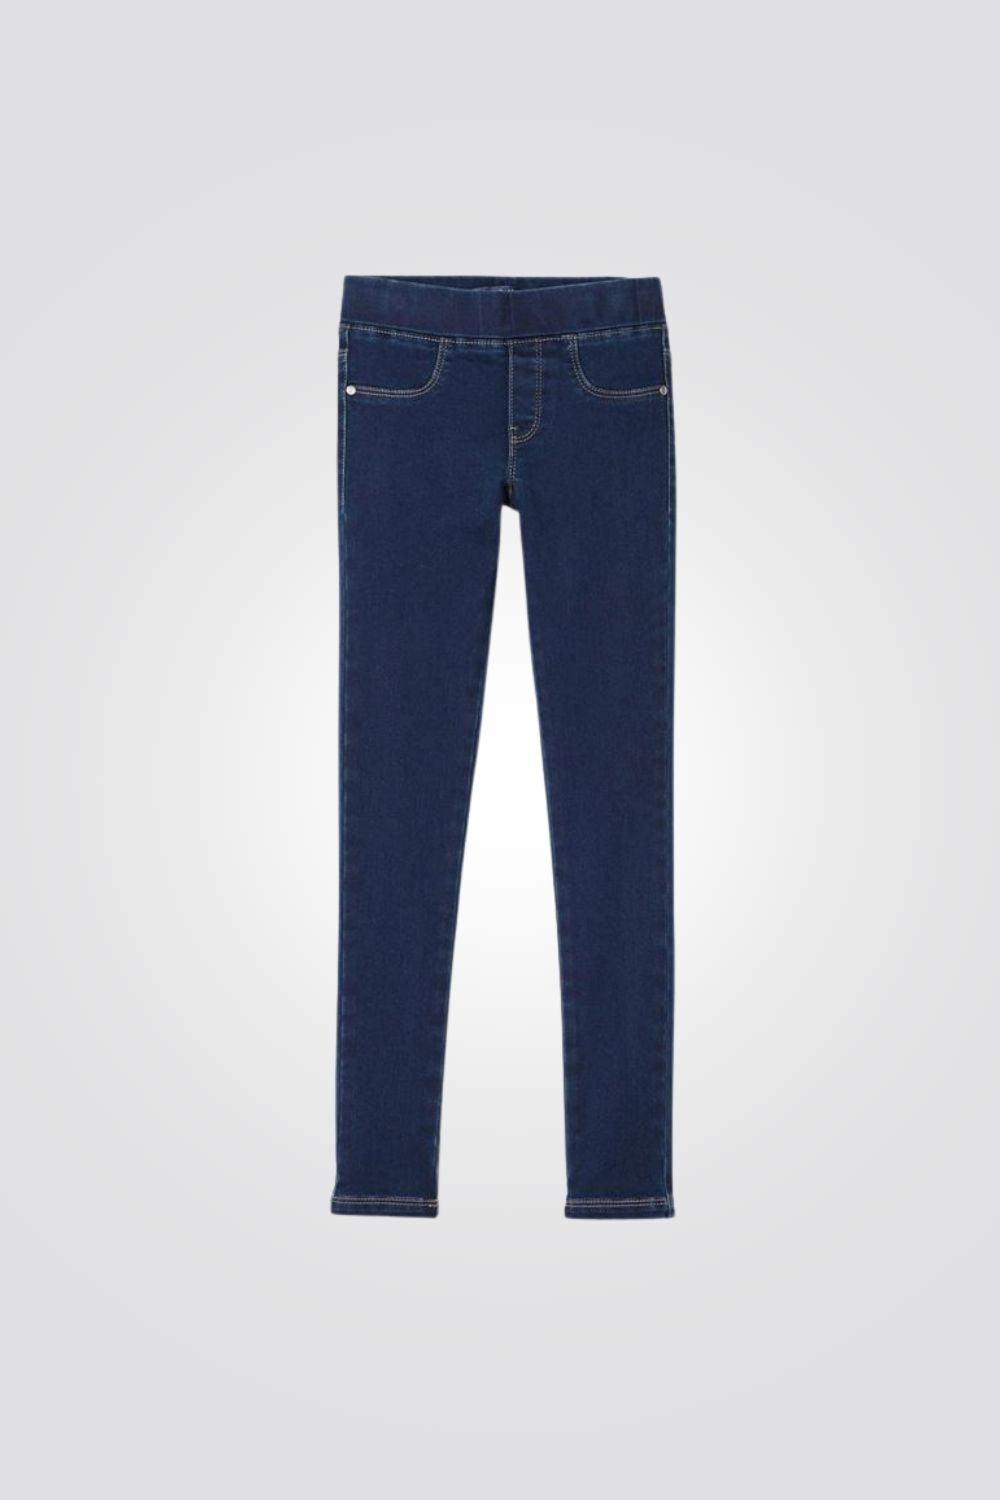 OKAIDI - סקיני ג'ינס כחול כהה ילדות - MASHBIR//365